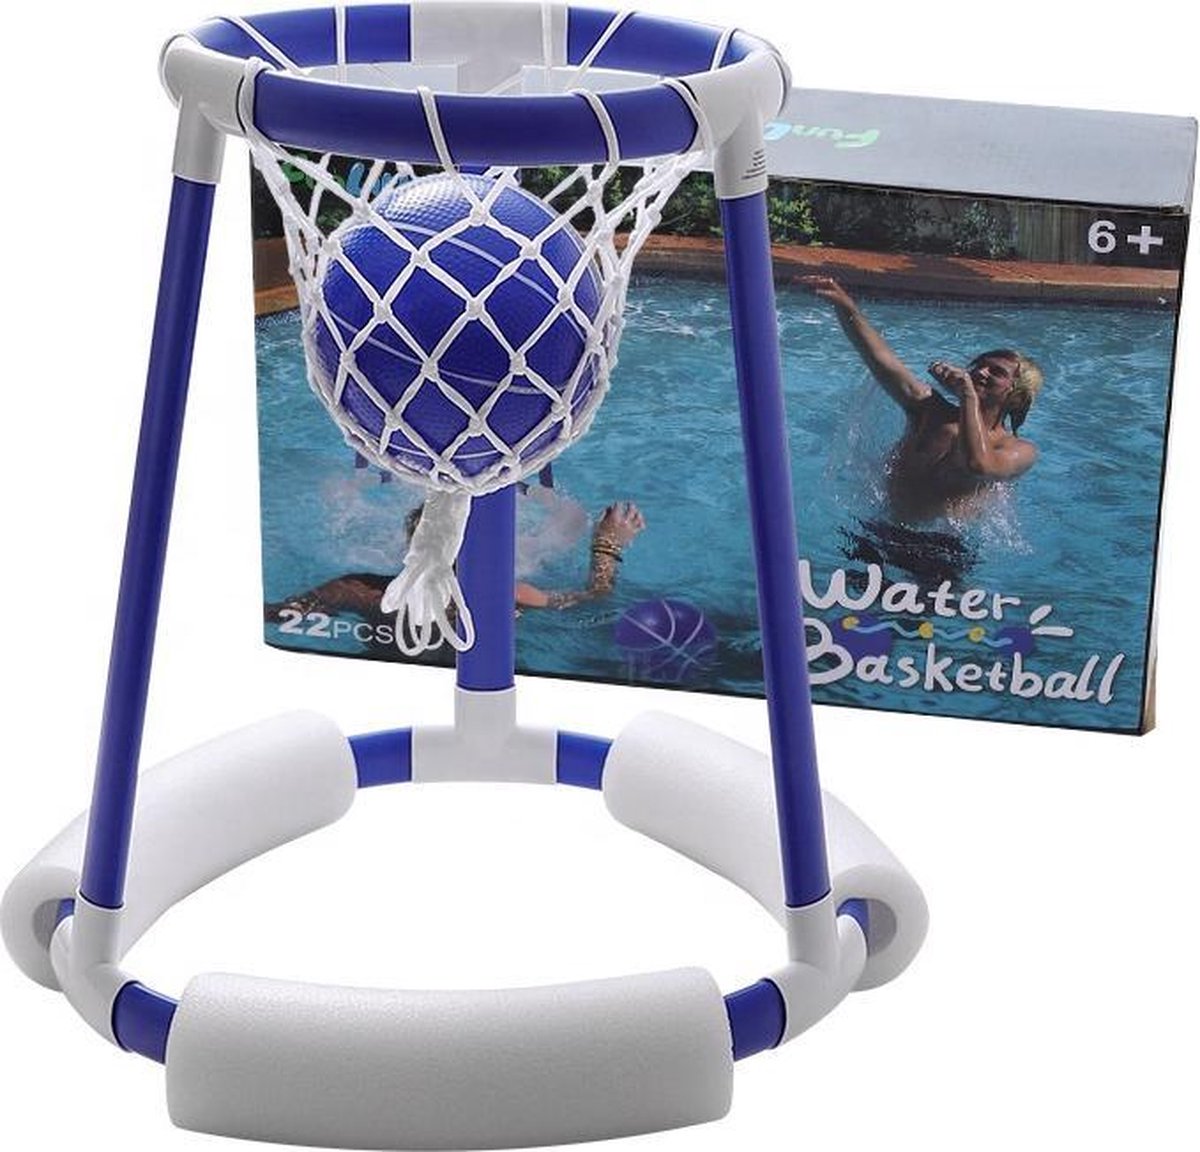 Comprend 2 balles et une pompe la piscine Pour l'extérieur OBOVO Kit de basket-ball flottant avec planche de natation le jeu de basket-ball 